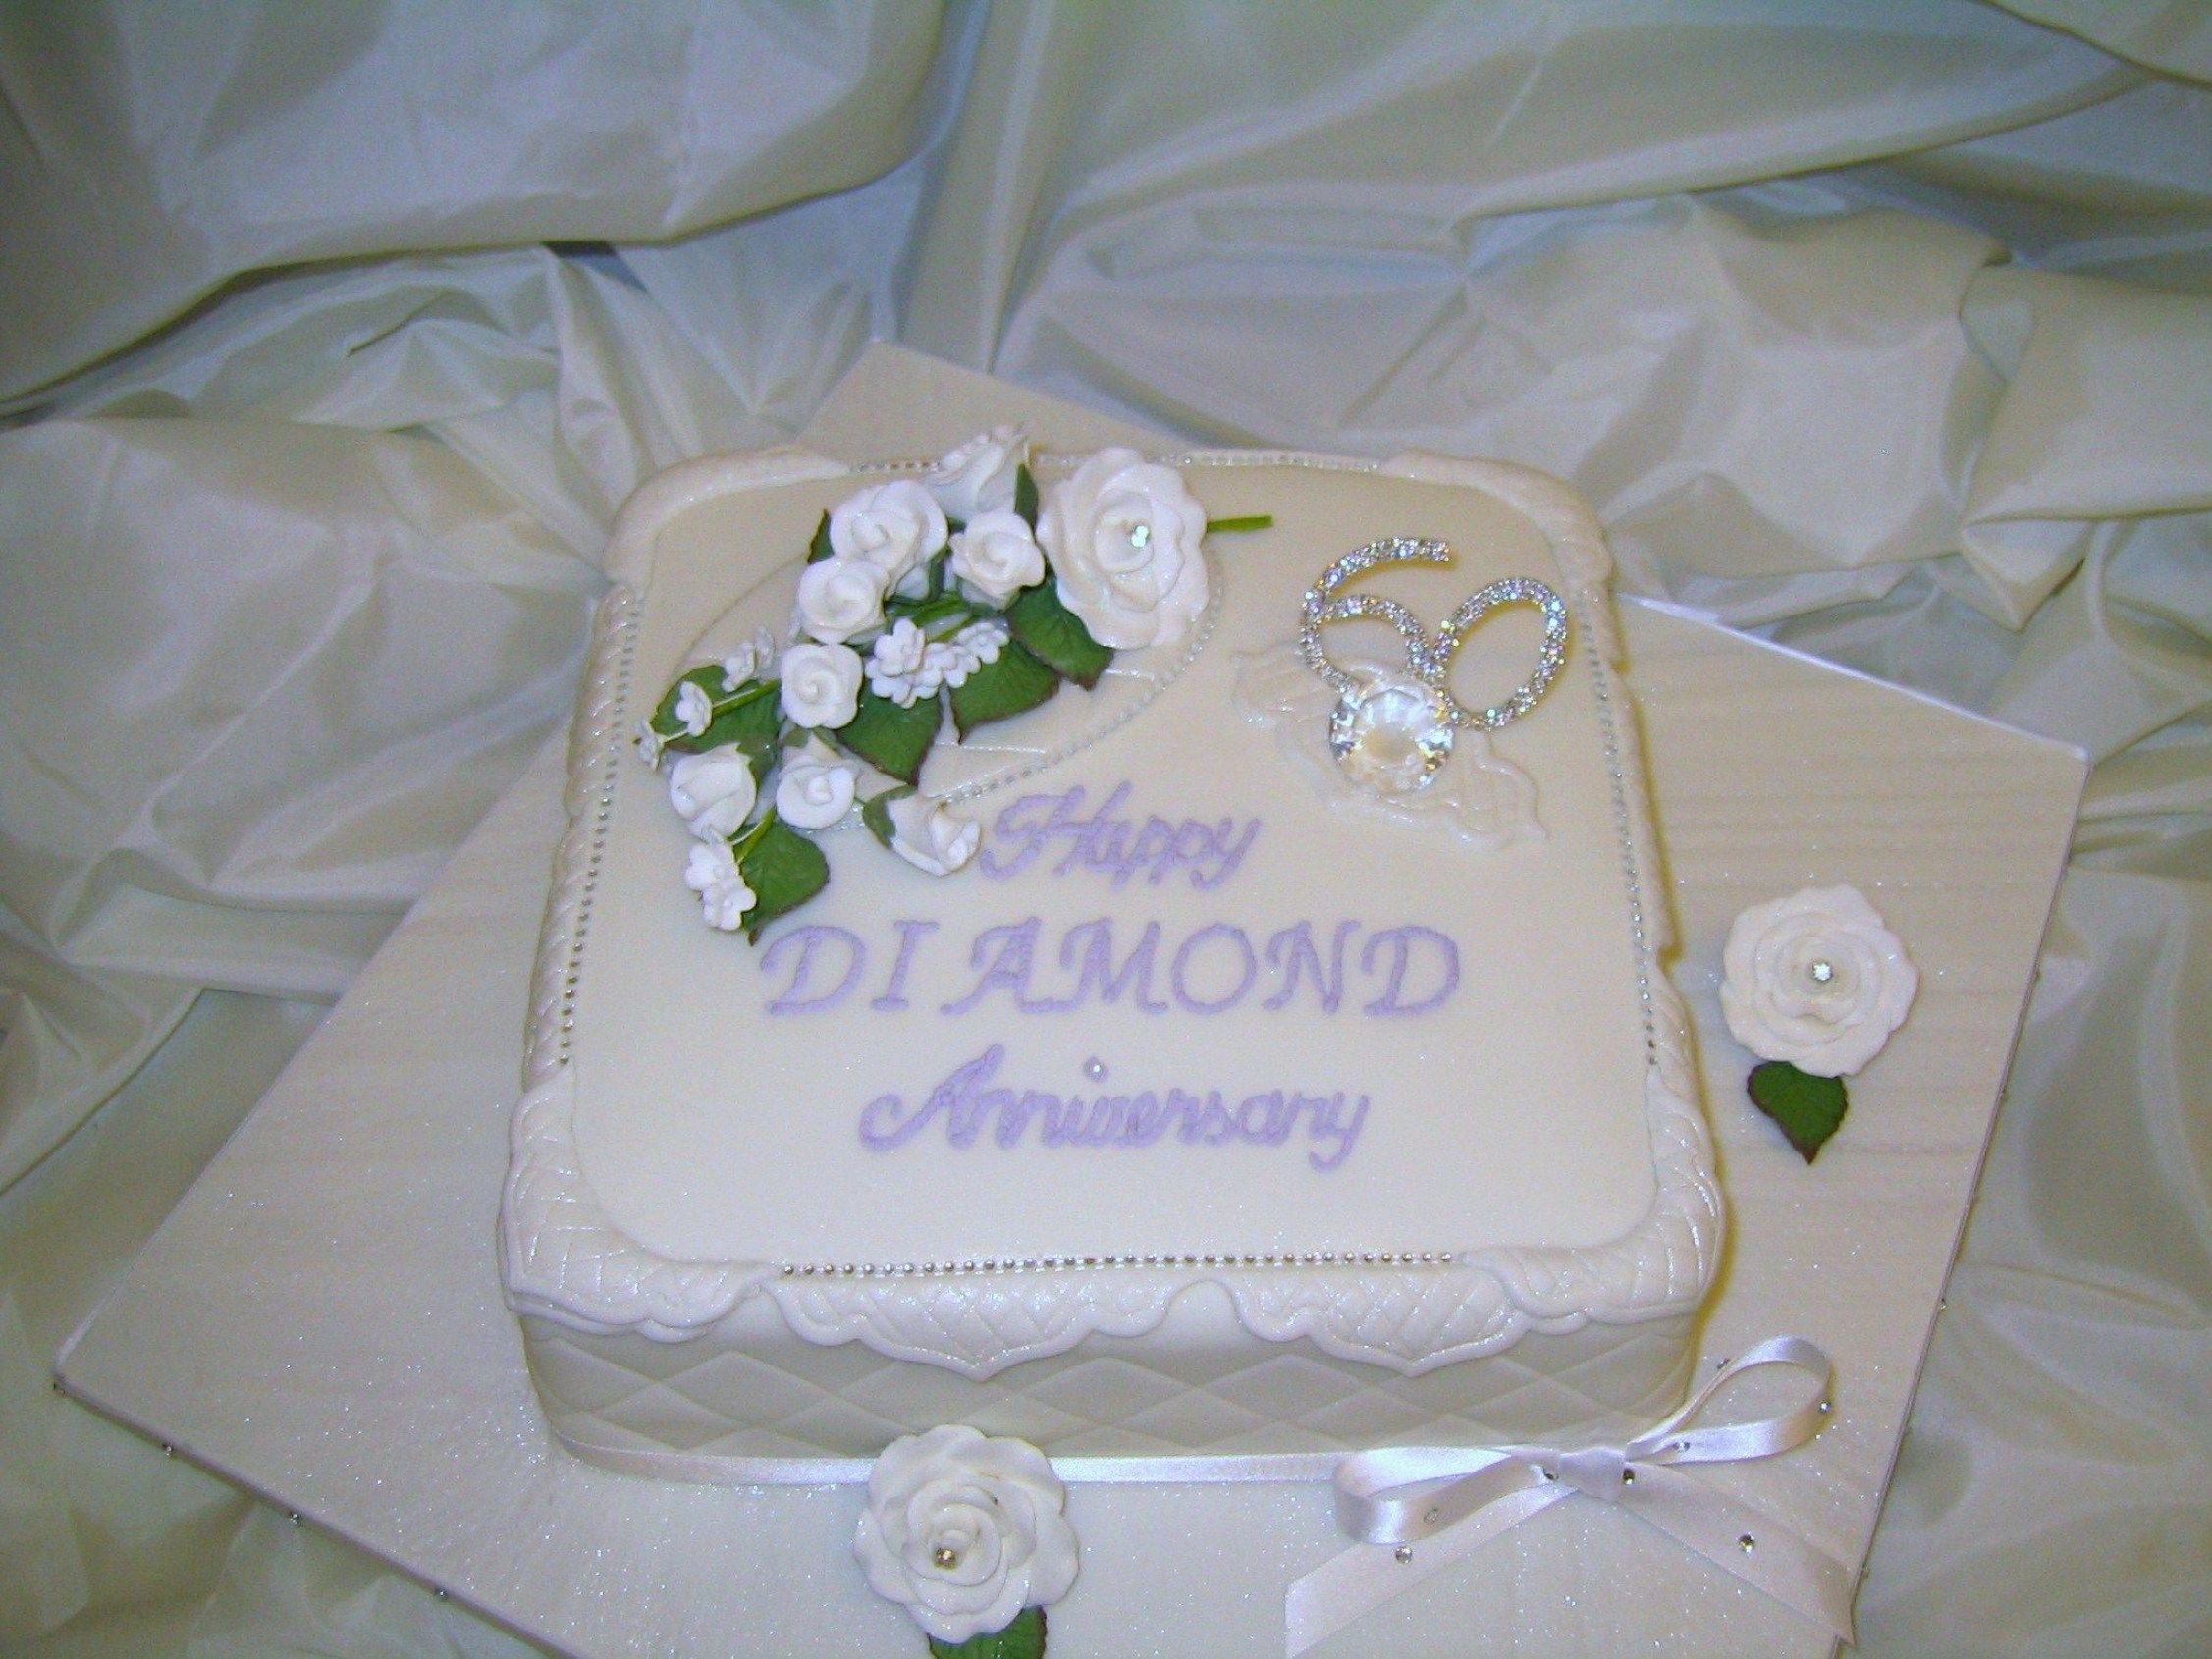 Совместное 60 летием. С бриллиантовой свадьбой. Торт на бриллиантовую свадьбу 60 лет. Бриллиантовая свадьба открытки. Торт на 60 летие совместной жизни.